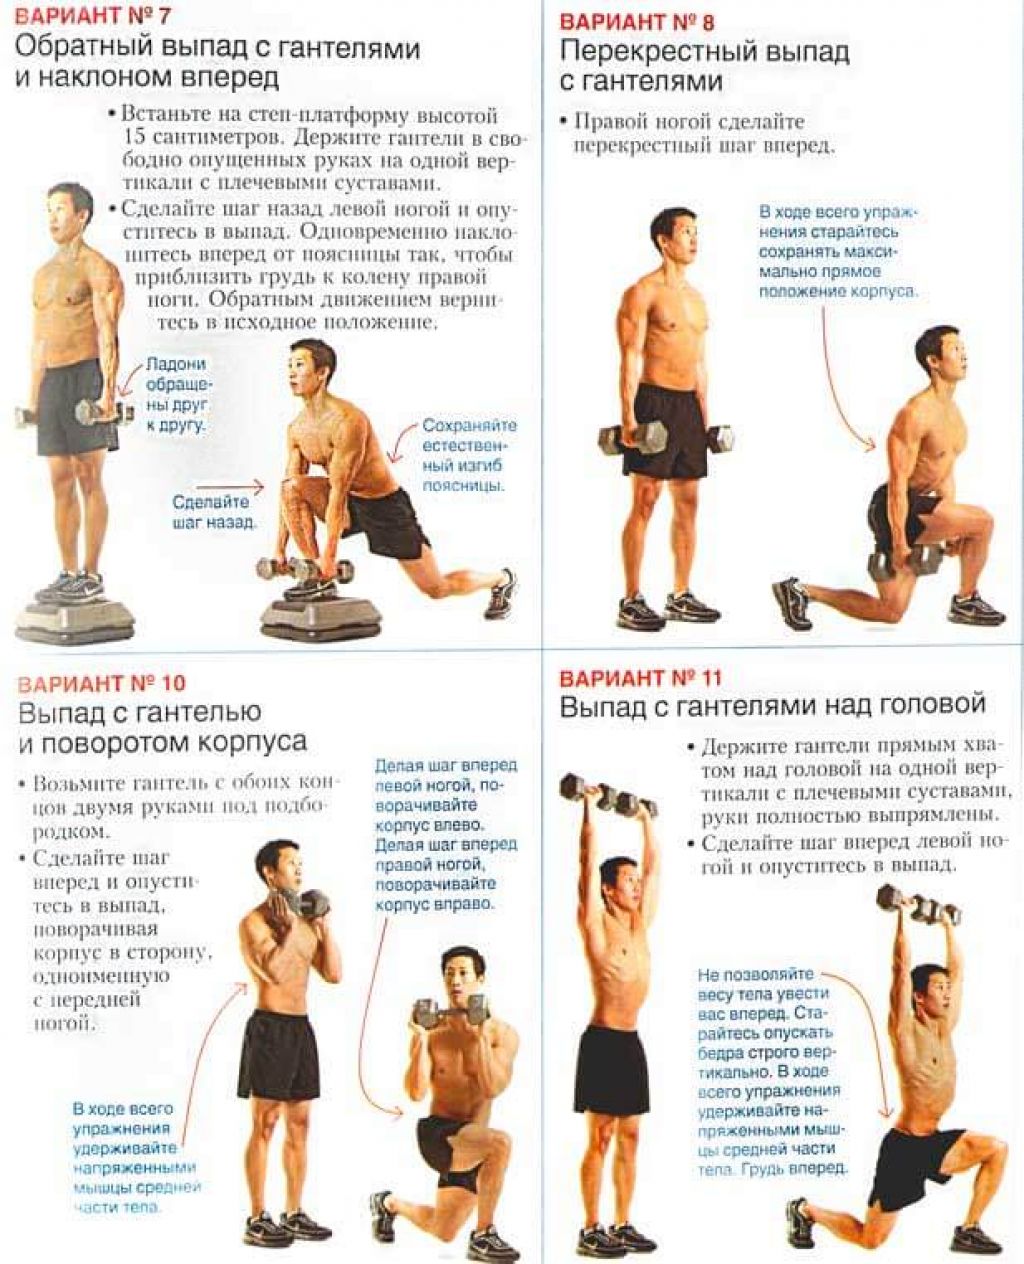 Программа для массы с гантелями. Комплекс силовых упражнений с гантелями с описанием. Базовые упражнения для набора мышечной массы для мужчин с гантелями. Тренировка с гантелями для мужчин. Гантели комплекс упражнений.